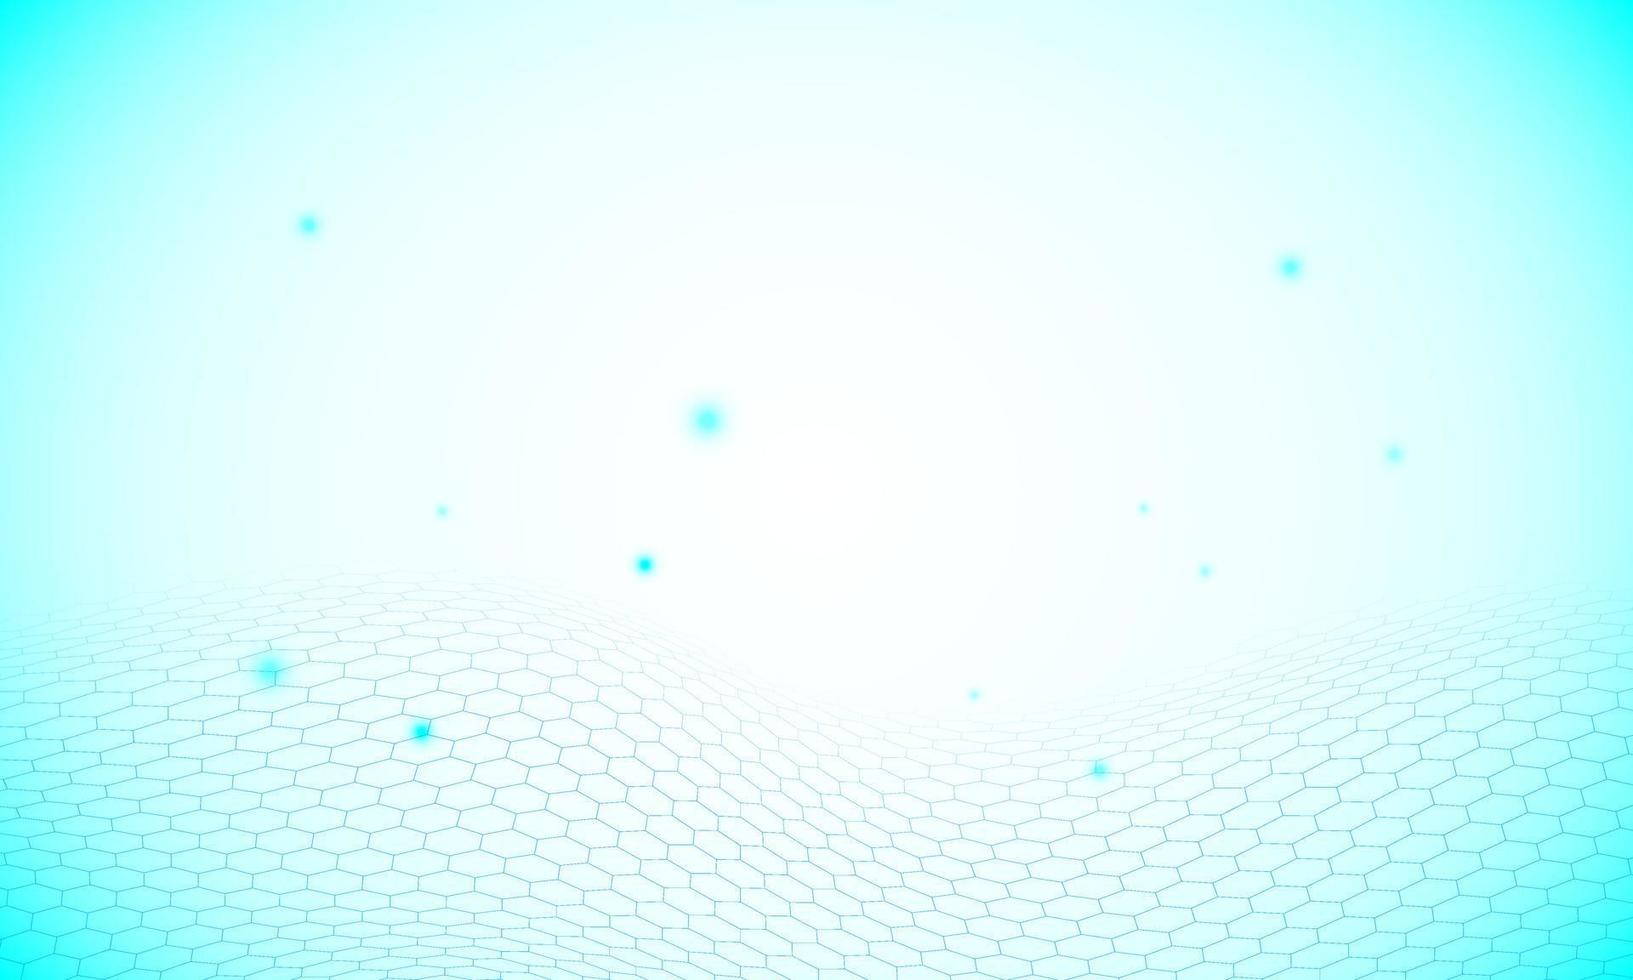 perspectiva azul hexagonal com ponto azul. vetor